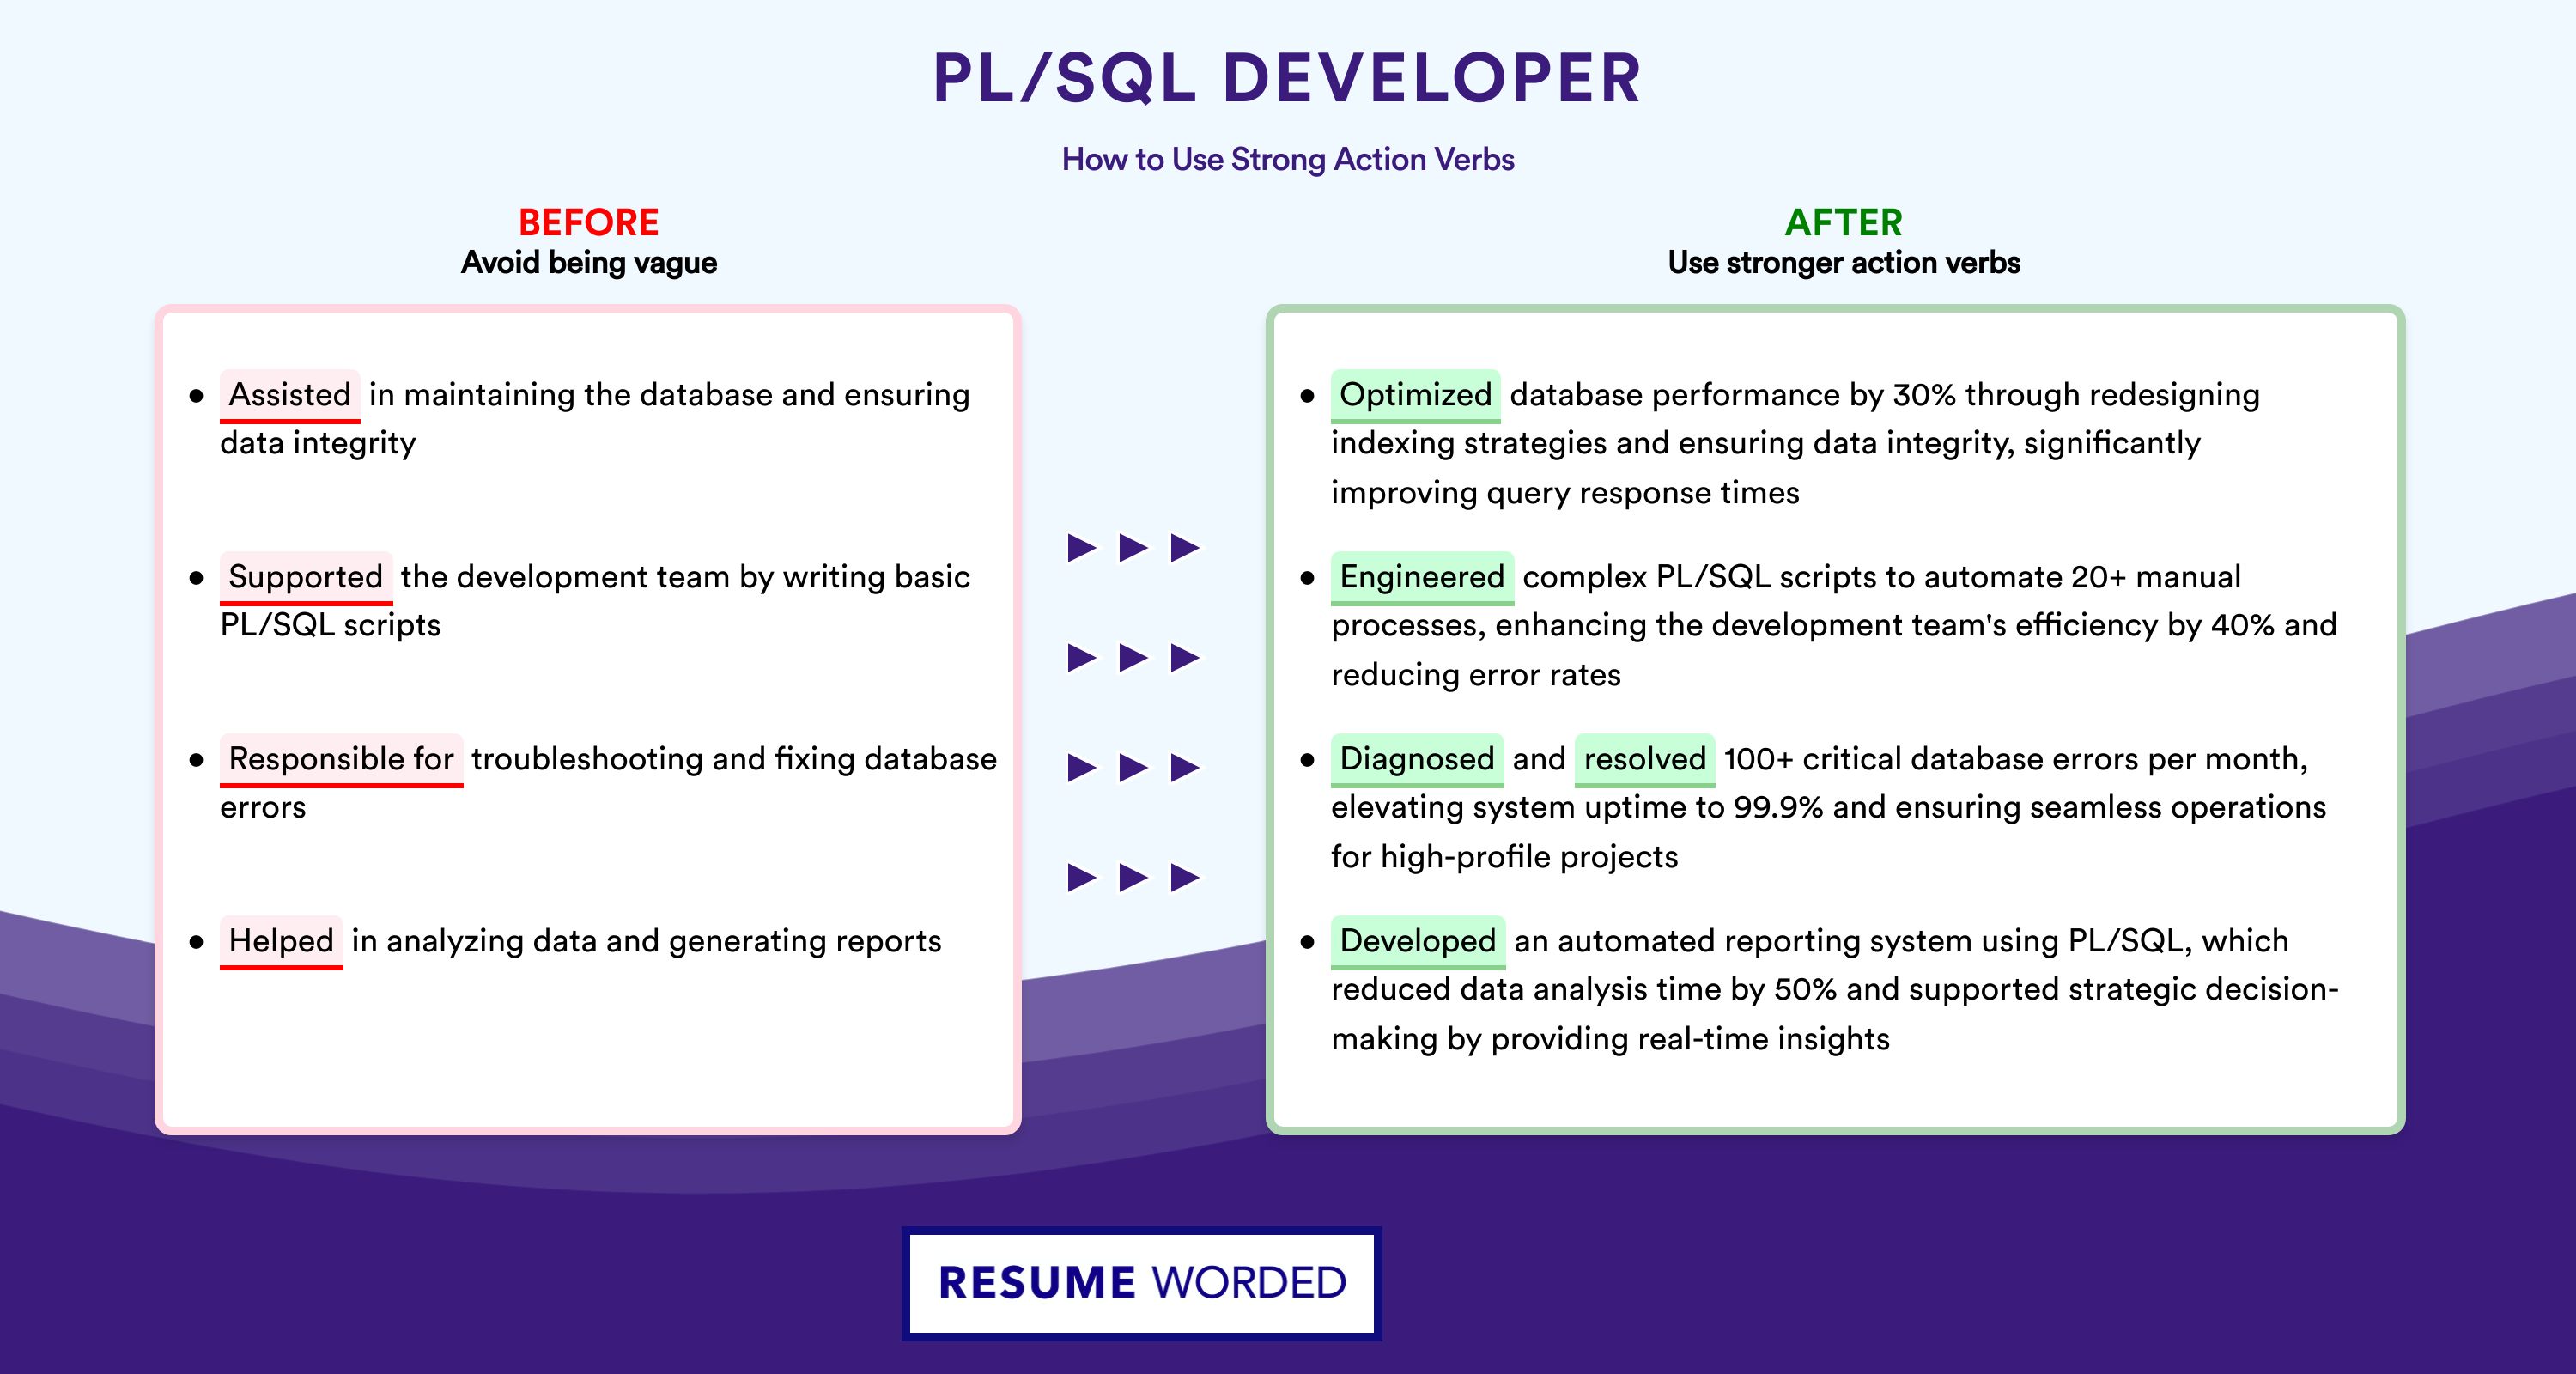 Action Verbs for PL/SQL Developer